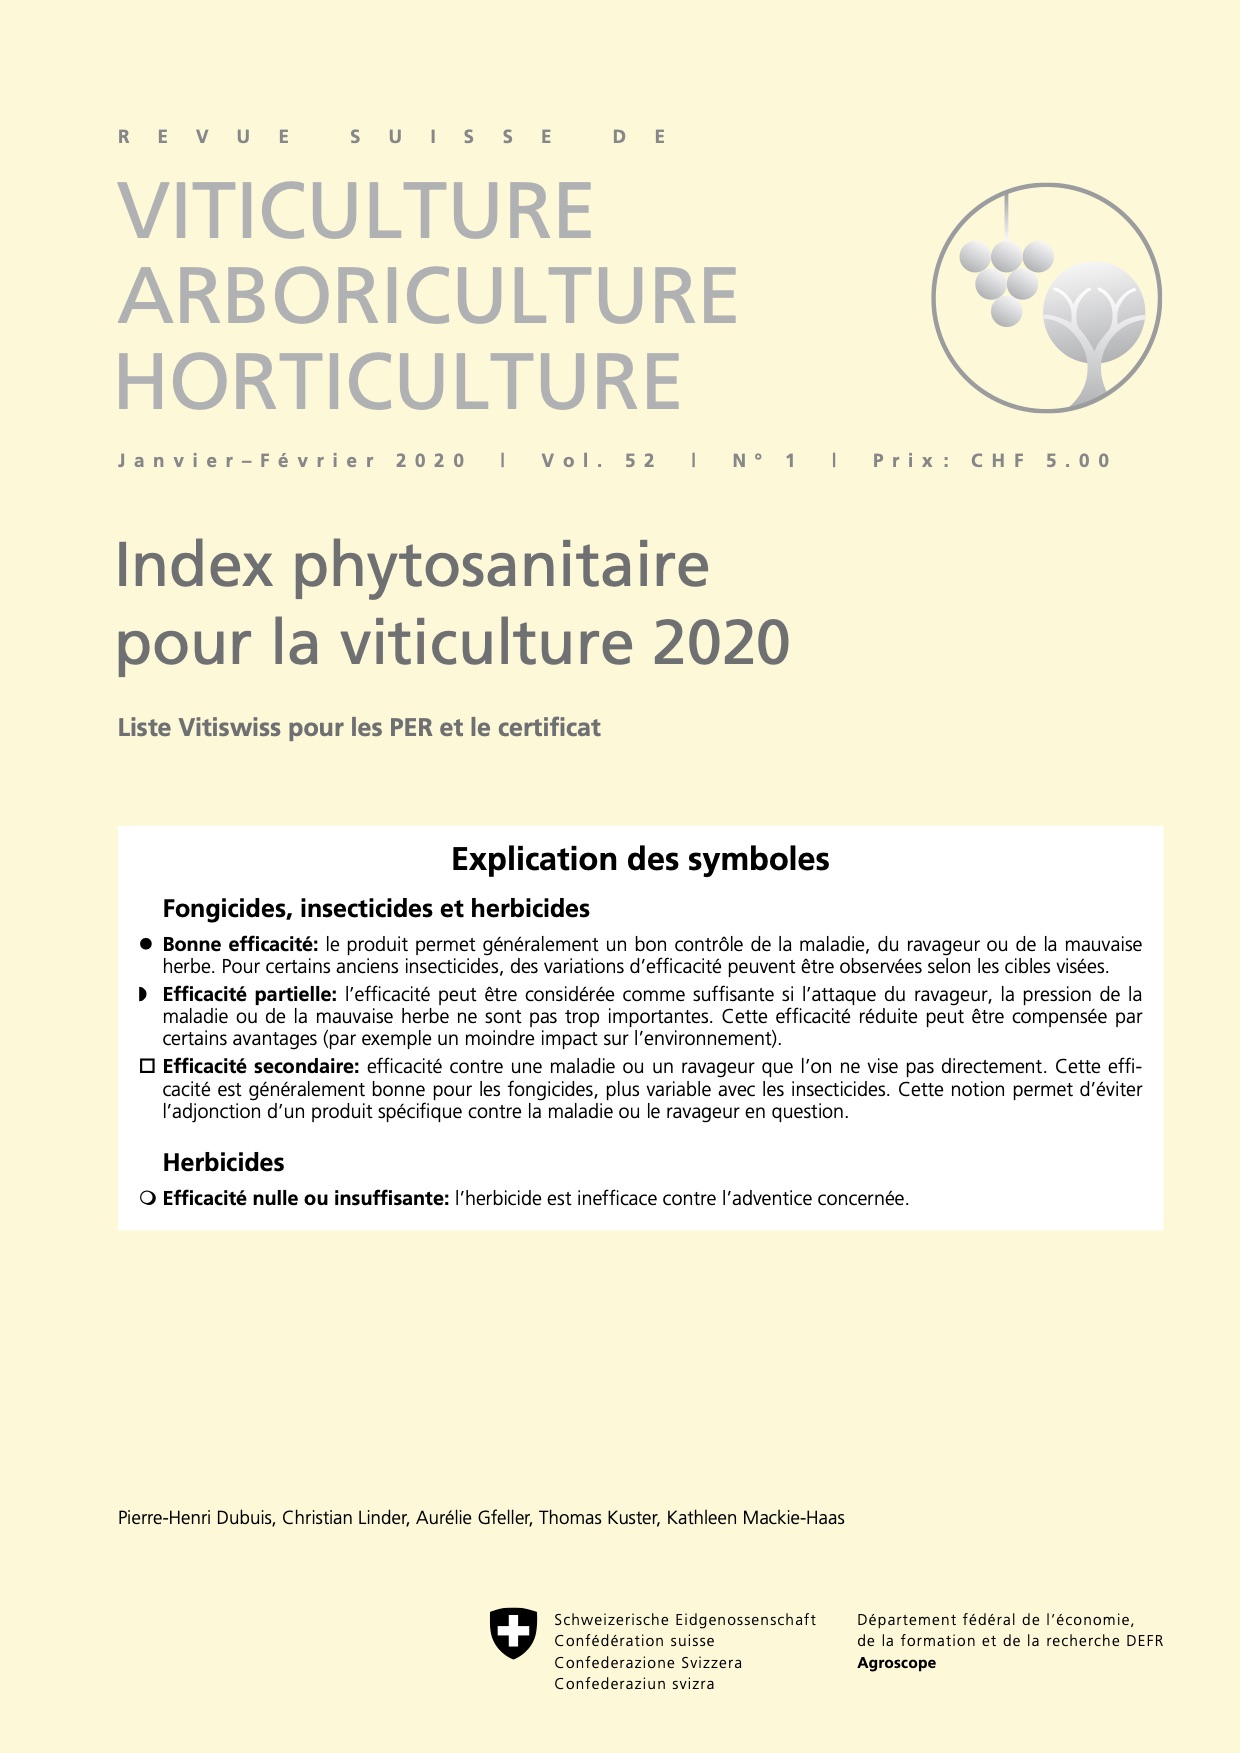 Index phytosanitaire pour la viticulture 2020